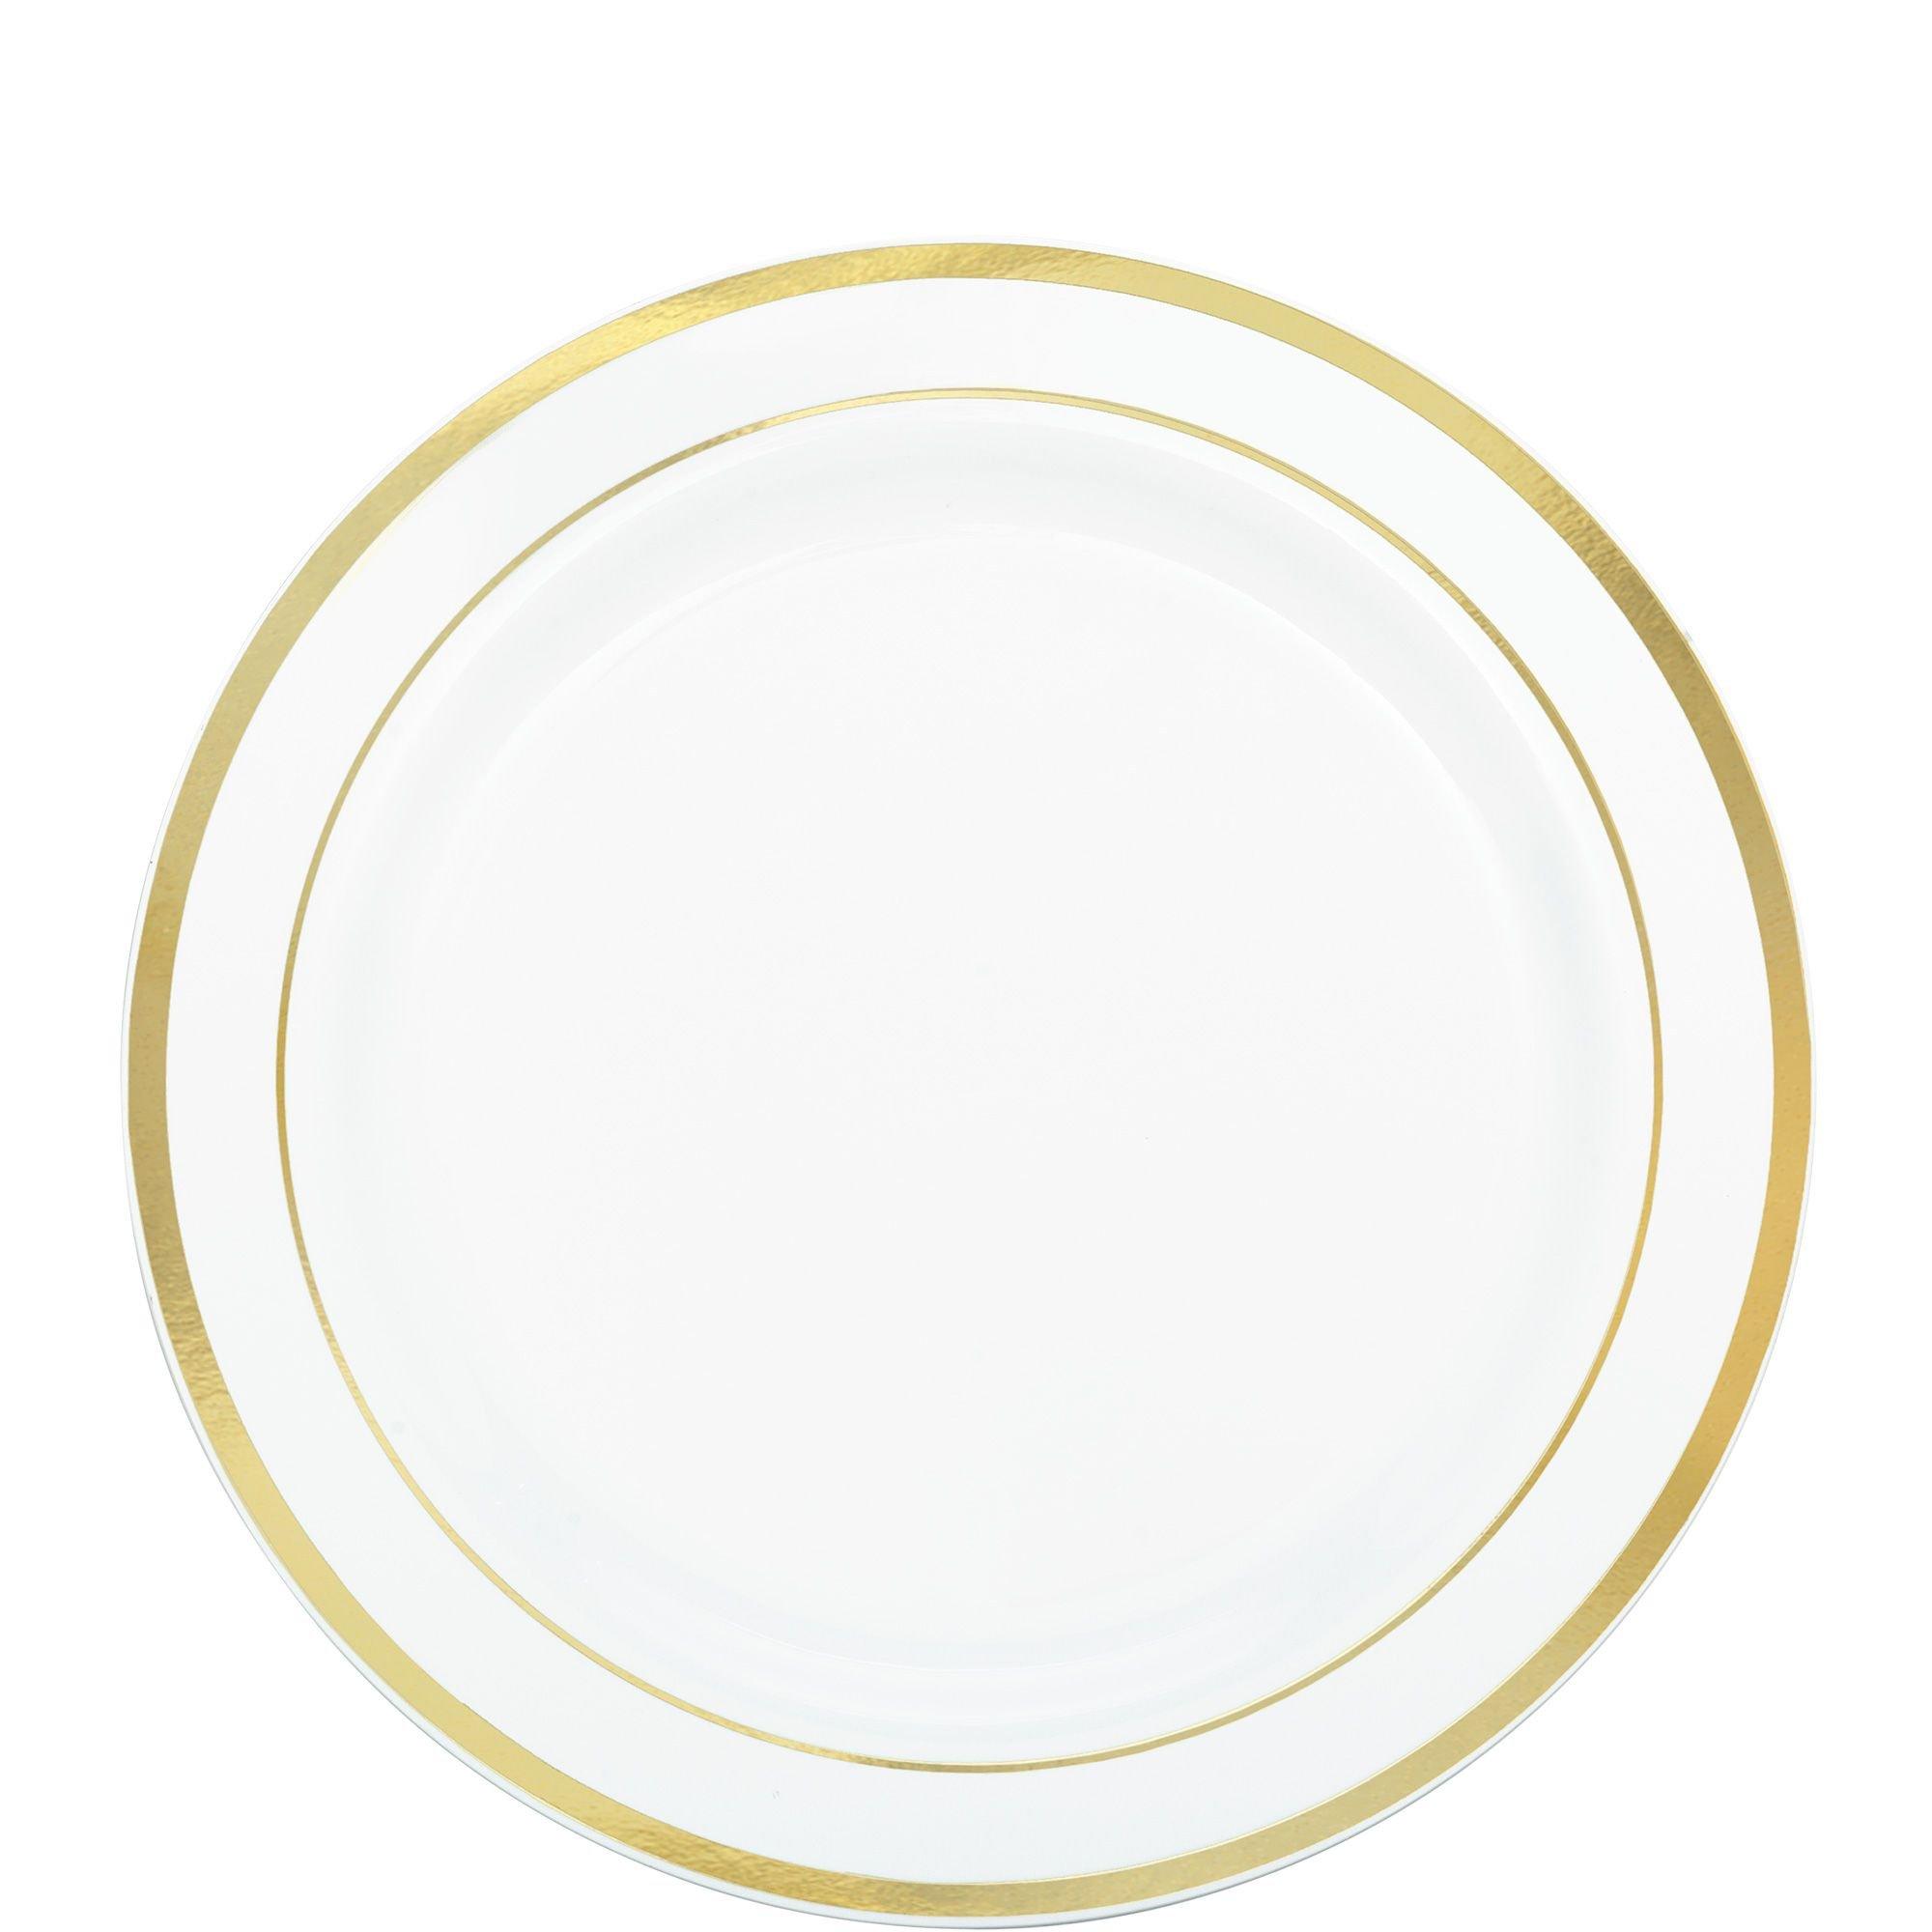 White Premium Plastic Dessert Plates 32ct